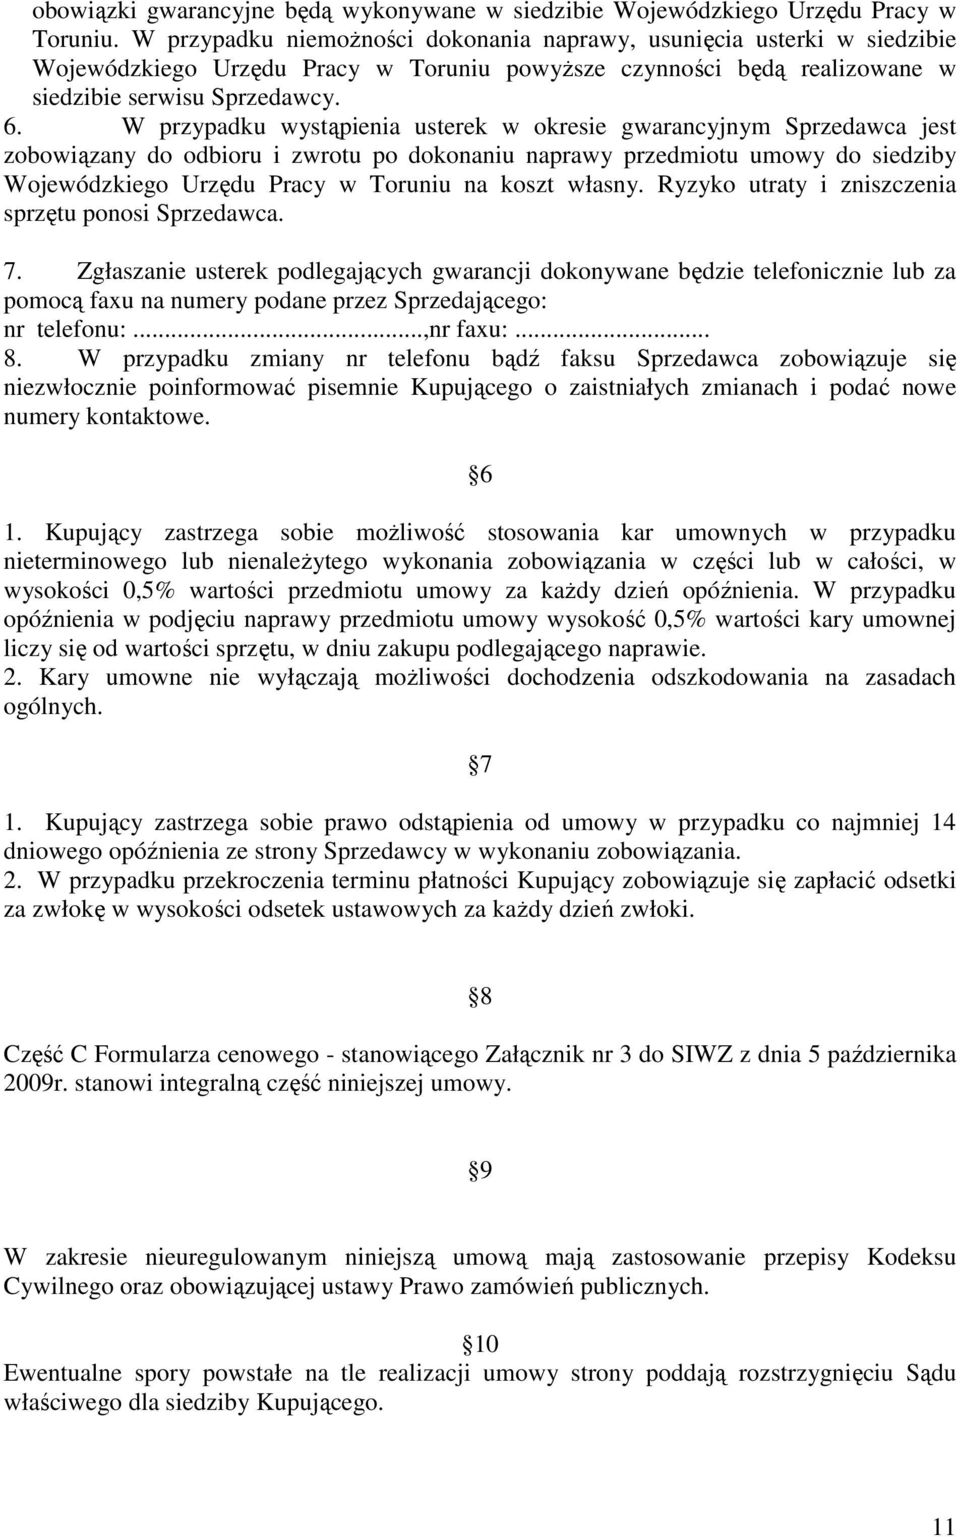 W przypadku wystąpienia usterek w okresie gwarancyjnym Sprzedawca jest zobowiązany do odbioru i zwrotu po dokonaniu naprawy przedmiotu umowy do siedziby Wojewódzkiego Urzędu Pracy w Toruniu na koszt